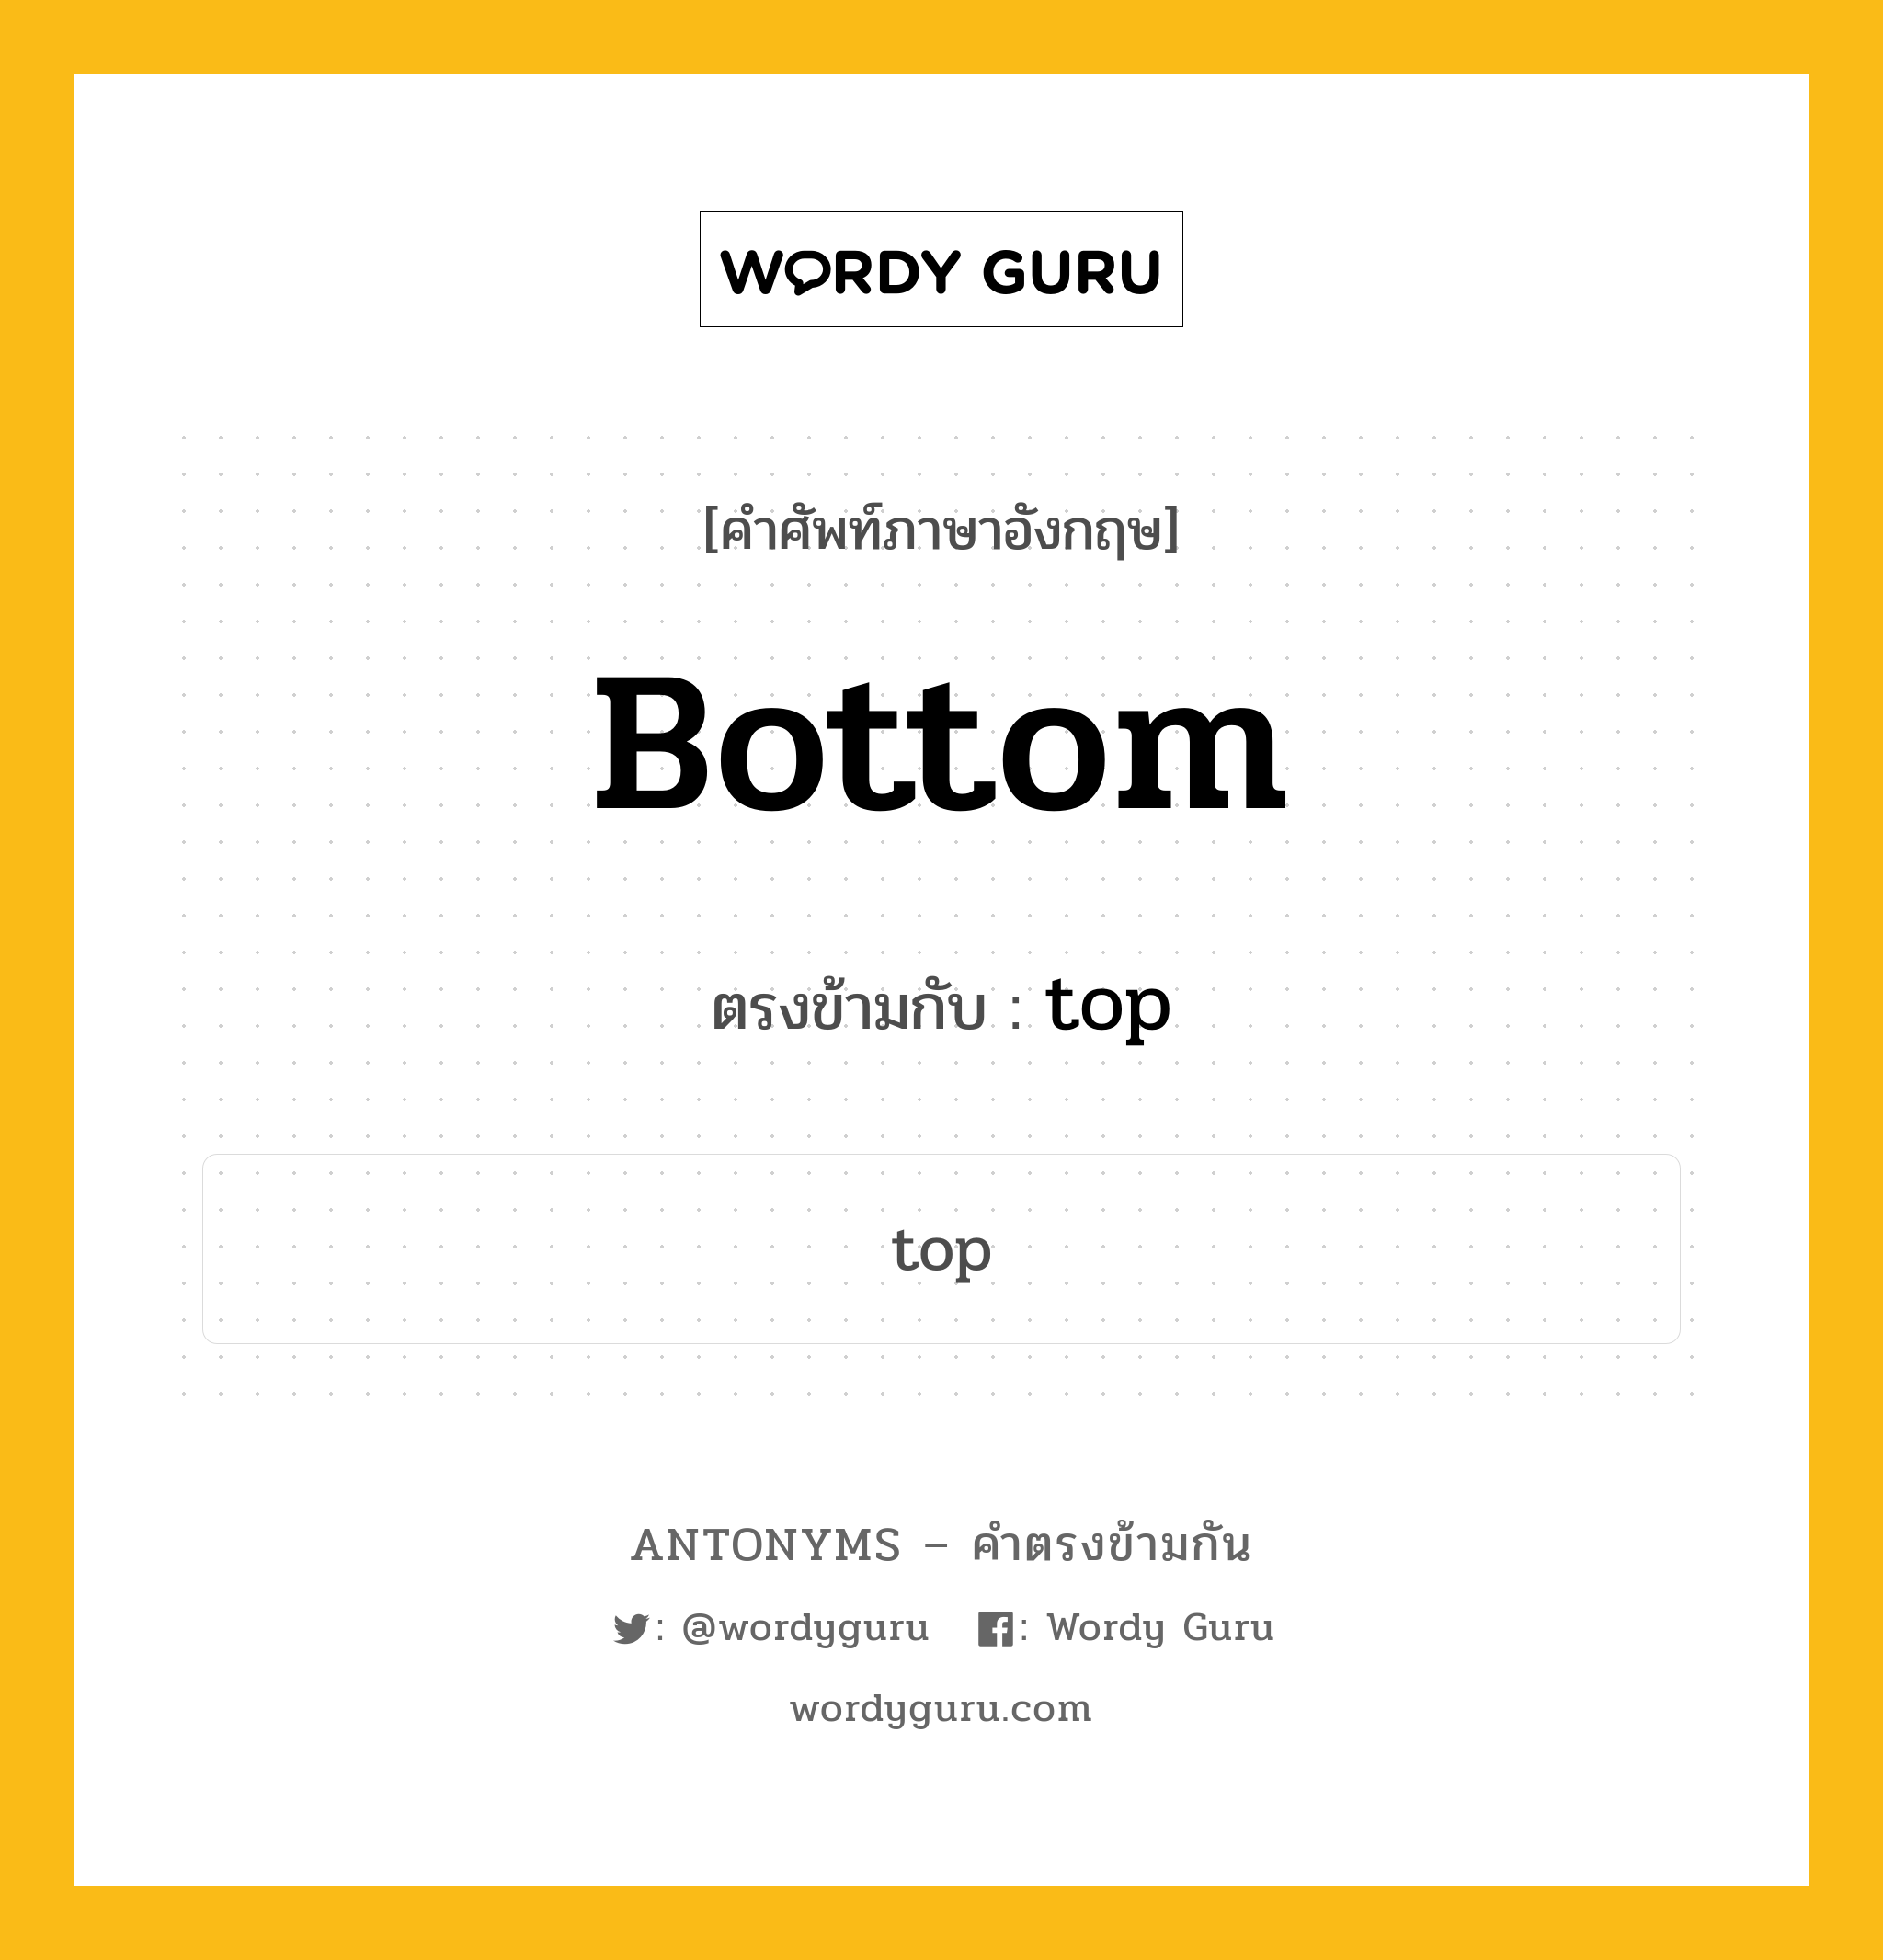 bottom เป็นคำตรงข้ามกับคำไหนบ้าง?, คำศัพท์ภาษาอังกฤษ bottom ตรงข้ามกับ top หมวด top